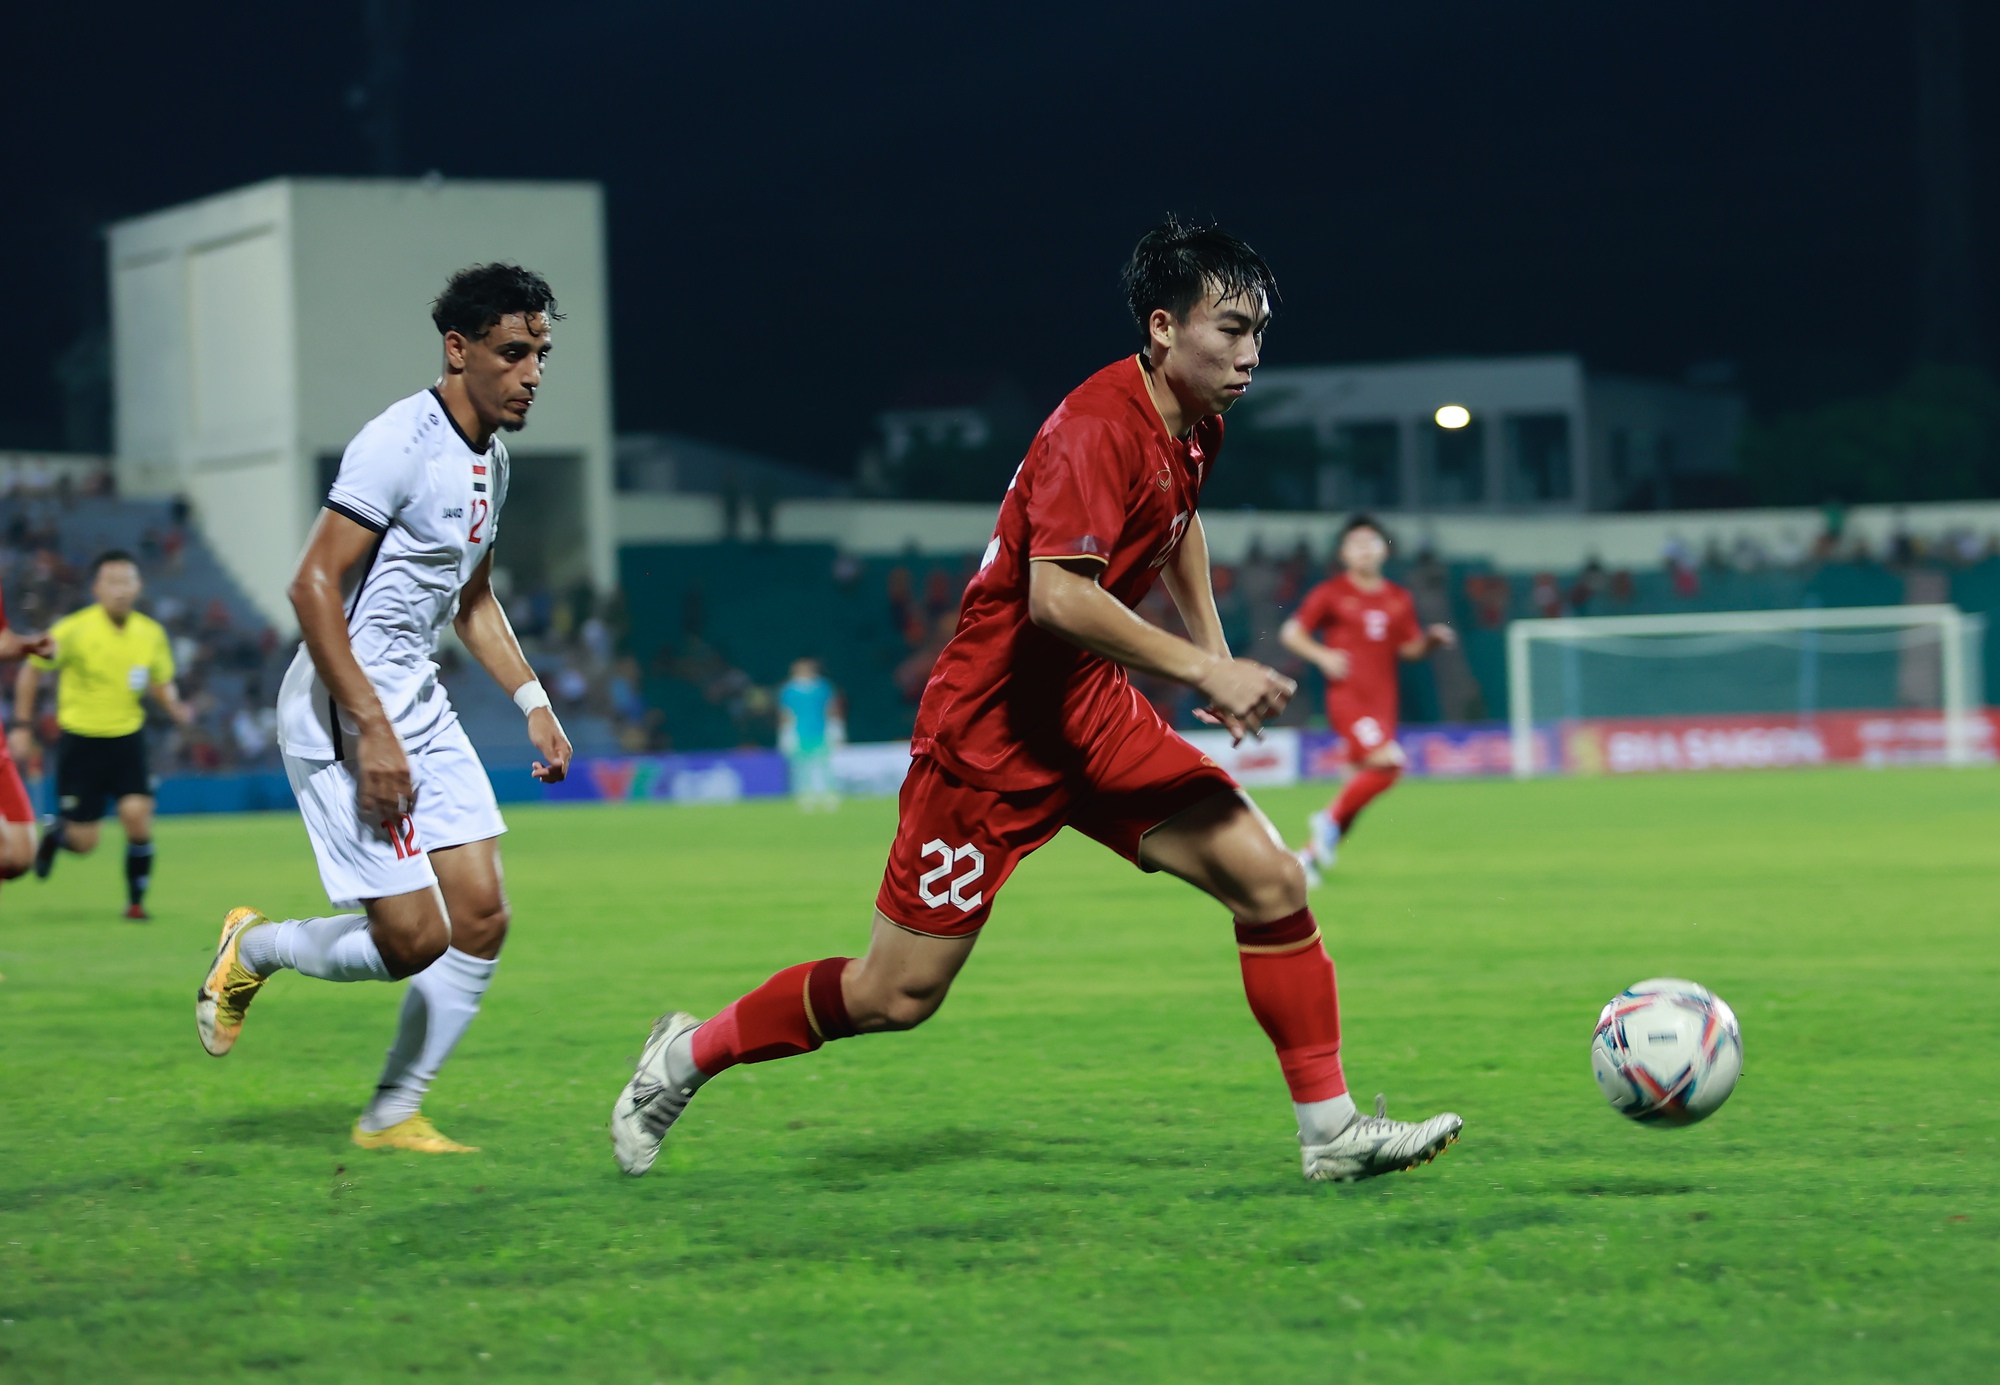 U23 Việt Nam vs U23 Singapore (19h ngày 12/9): Thêm một chiến thắng? - Ảnh 1.